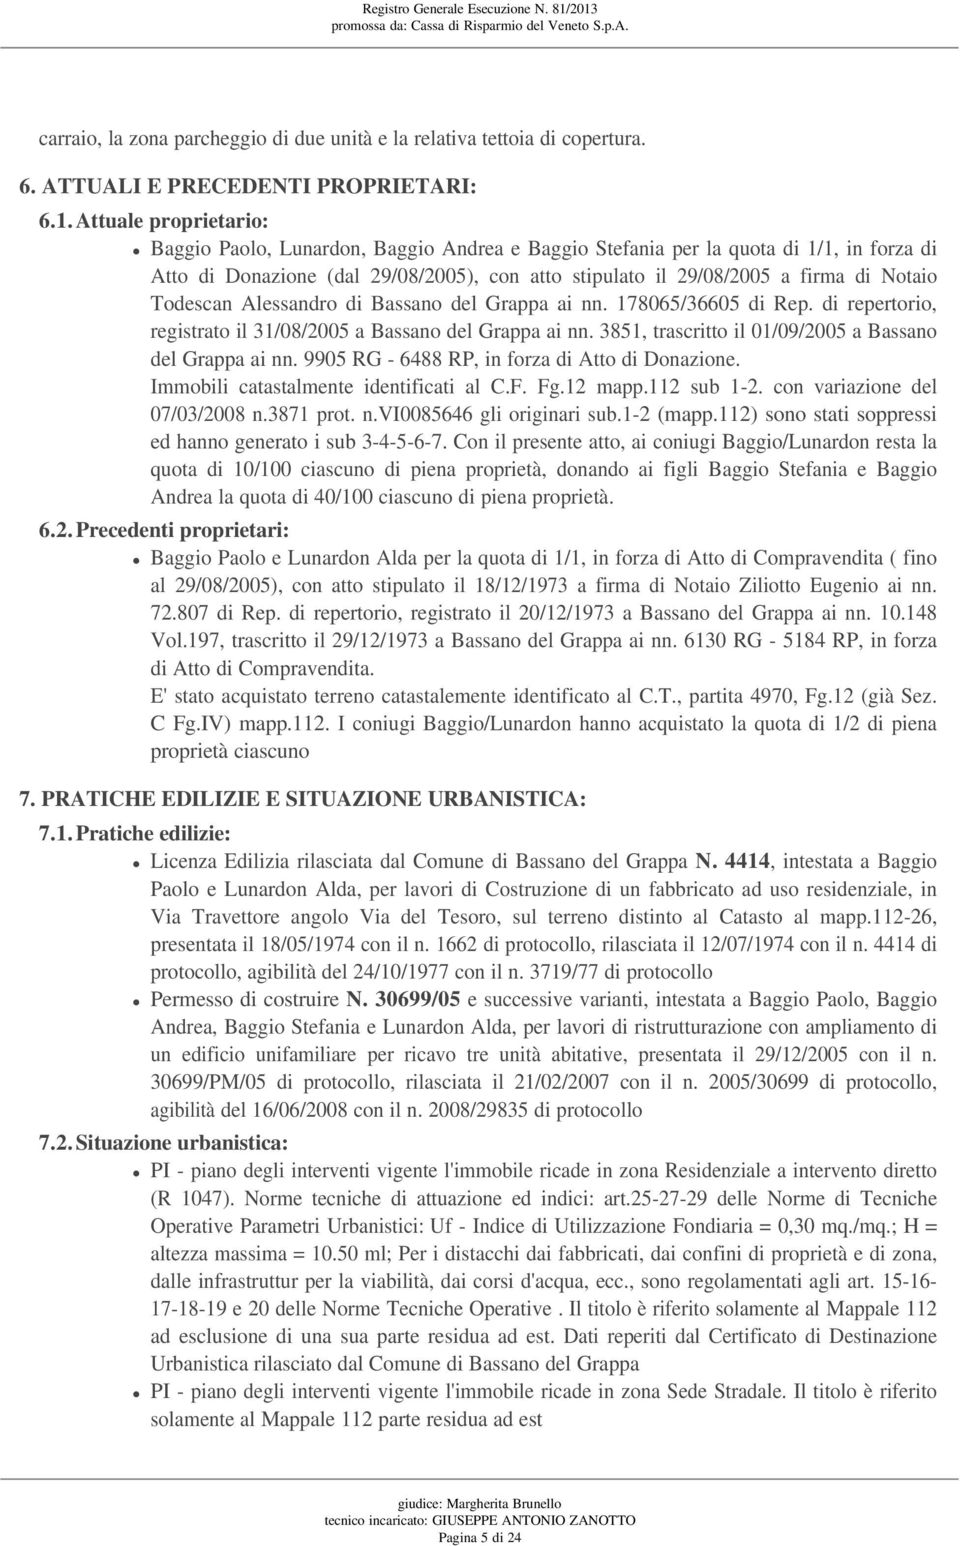 Todescan Alessandro di Bassano del Grappa ai nn. 178065/36605 di Rep. di repertorio, registrato il 31/08/2005 a Bassano del Grappa ai nn. 3851, trascritto il 01/09/2005 a Bassano del Grappa ai nn.